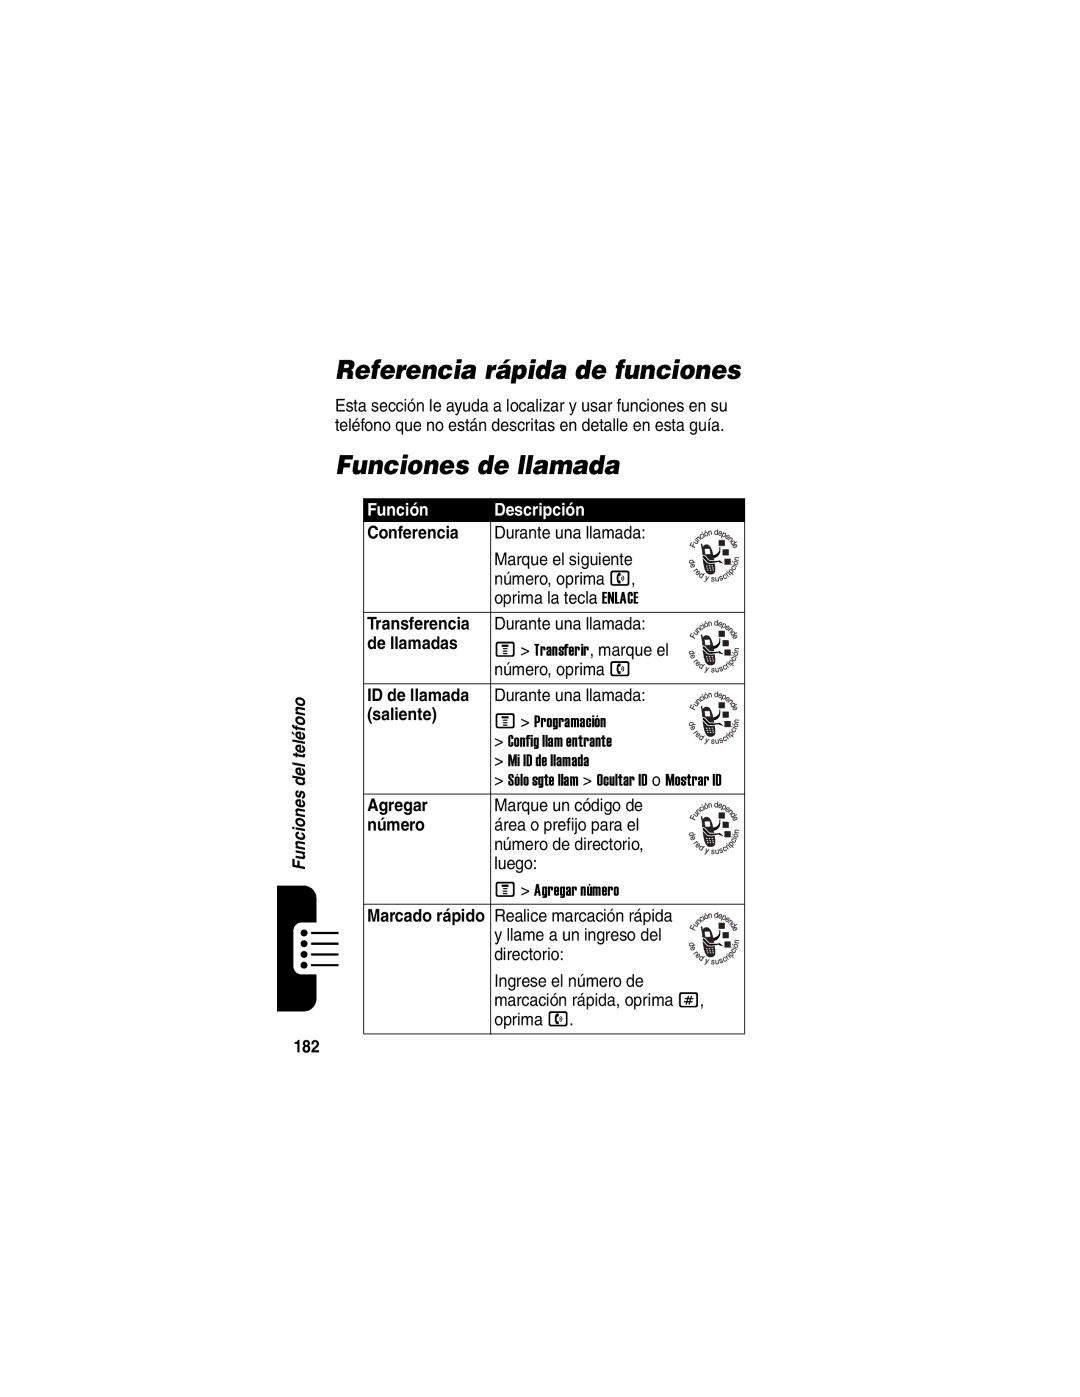 Motorola V330 manual Referencia rápida de funciones, Funciones de llamada, Función Descripción 